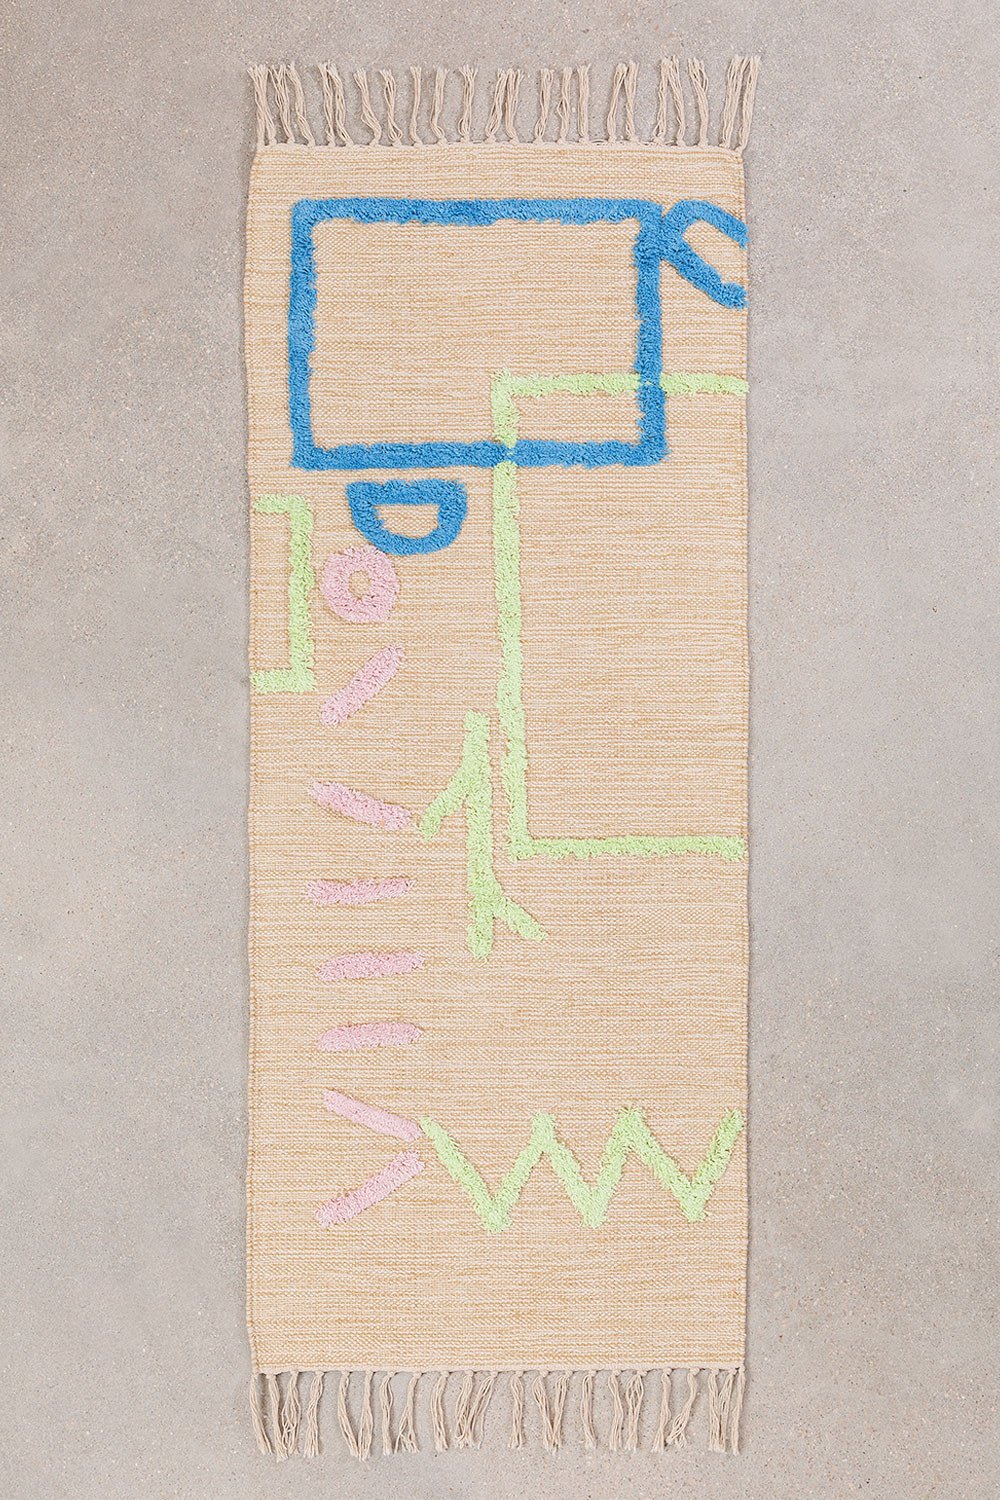 Katoenen vloerkleed (145x50 cm) Fania, galerij beeld 1